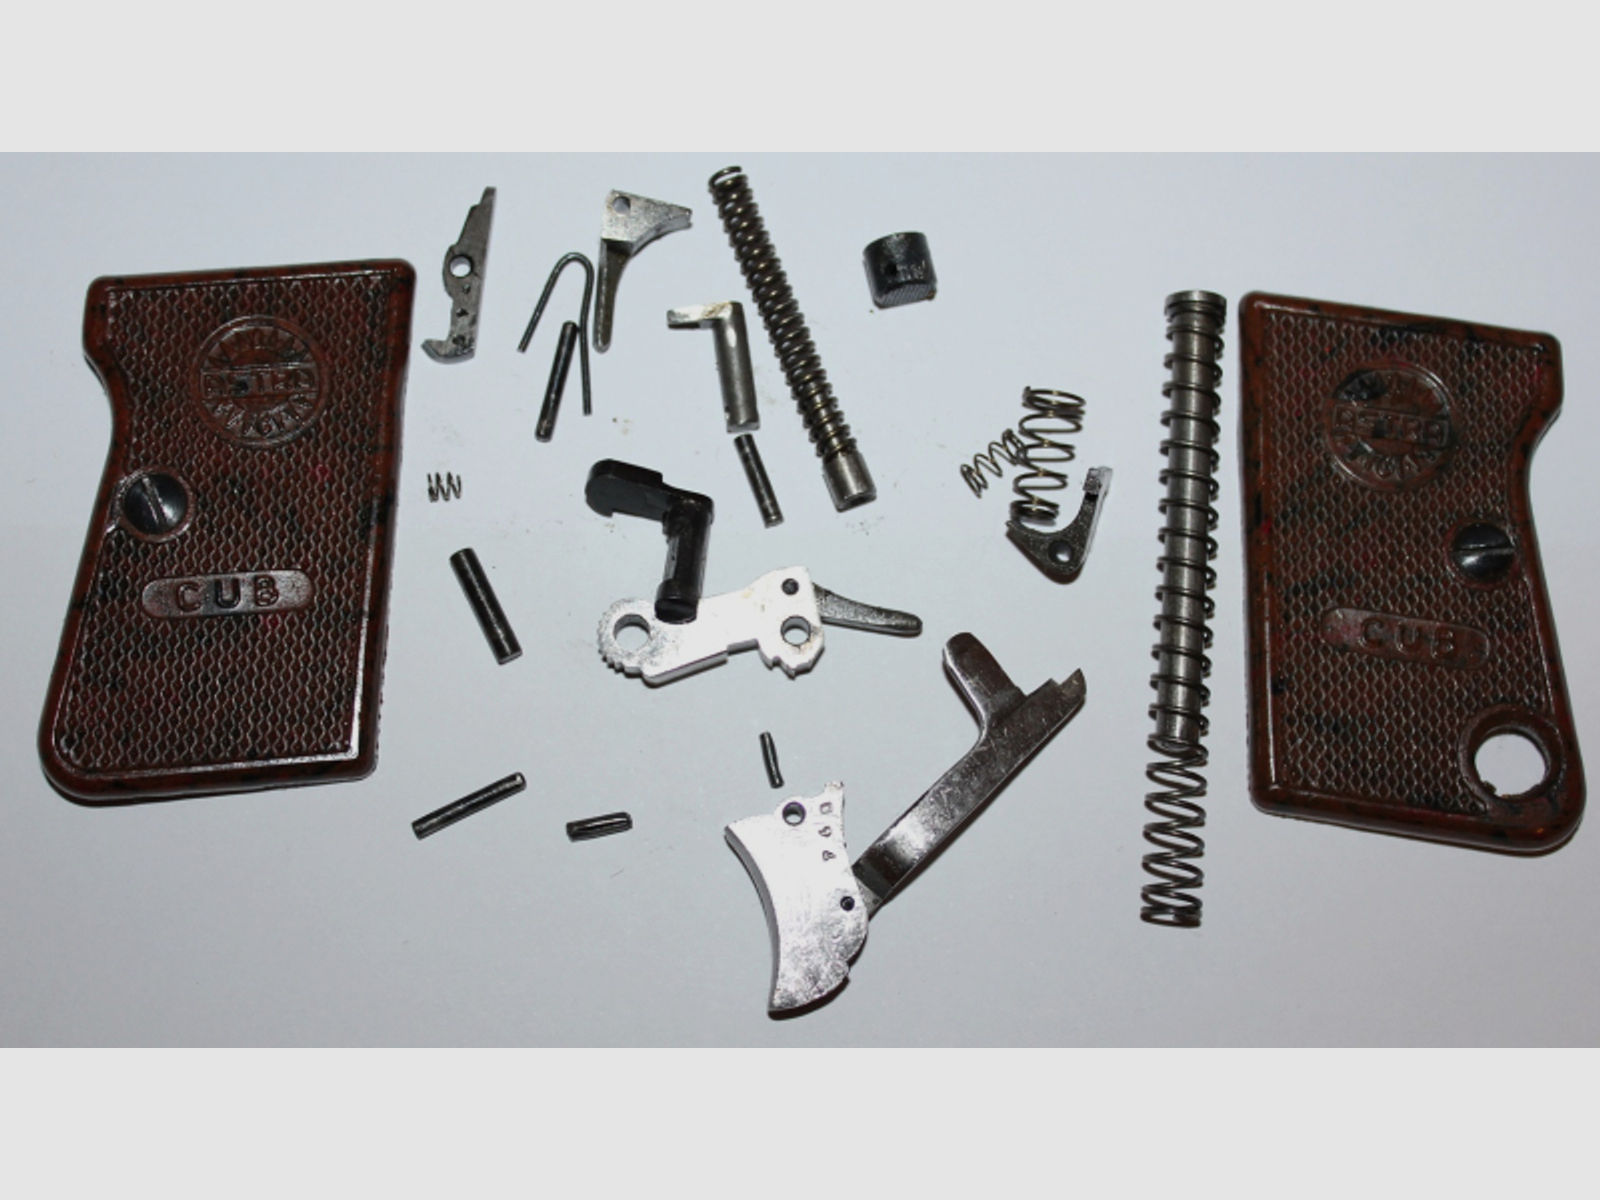 Ersatzteile Kleinteile für Pistole ASTRA CUB 2000 Kal. 6,35mm Browning Teile Freie Teilesatz